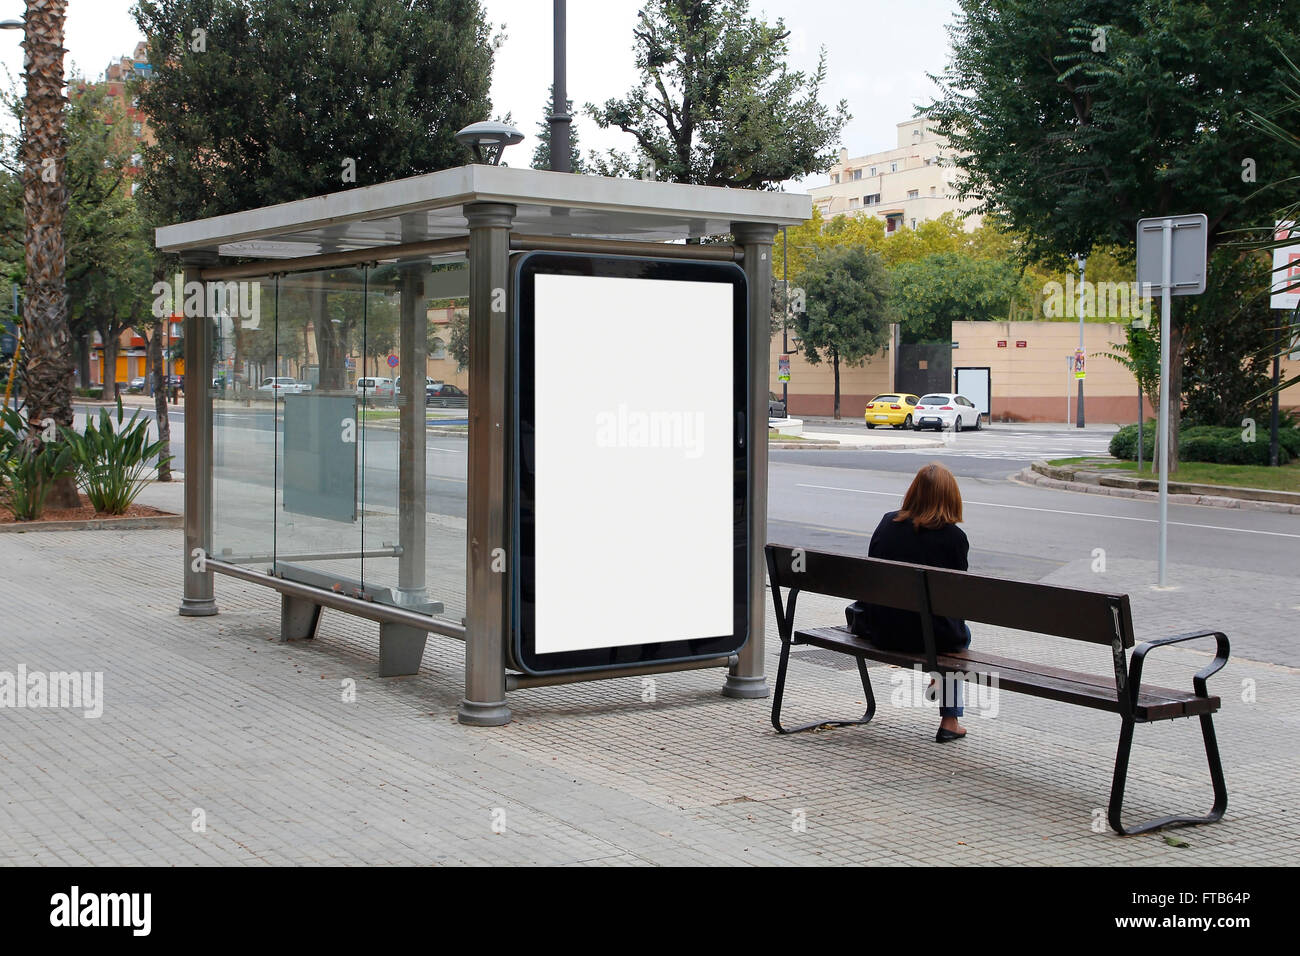 Tabellone vuoto in una fermata del bus, per la pubblicità in strada Foto Stock